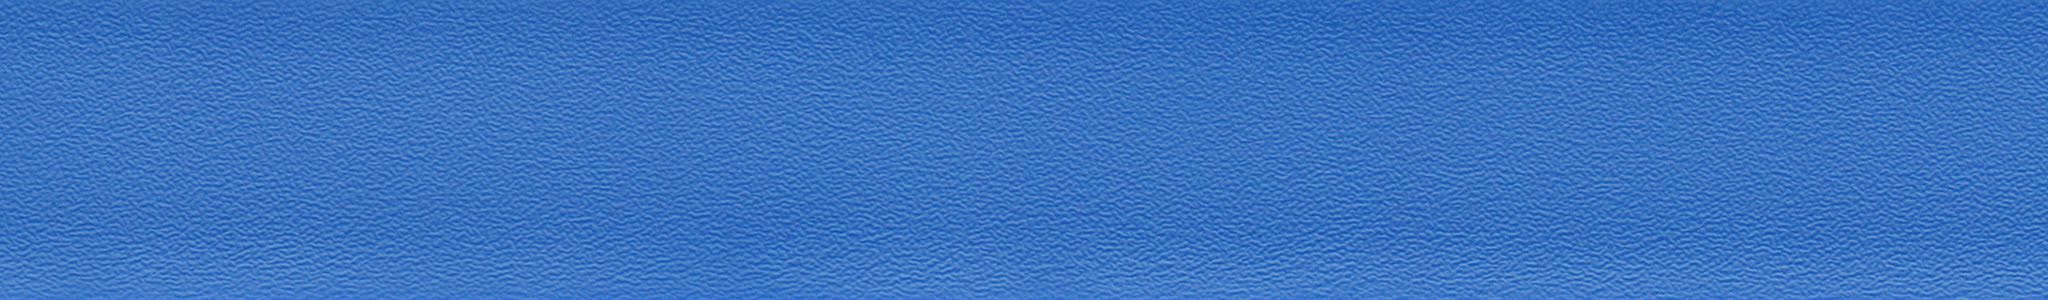 ABS SL 0125 modrá perlička 22x0,45mm HU 15125